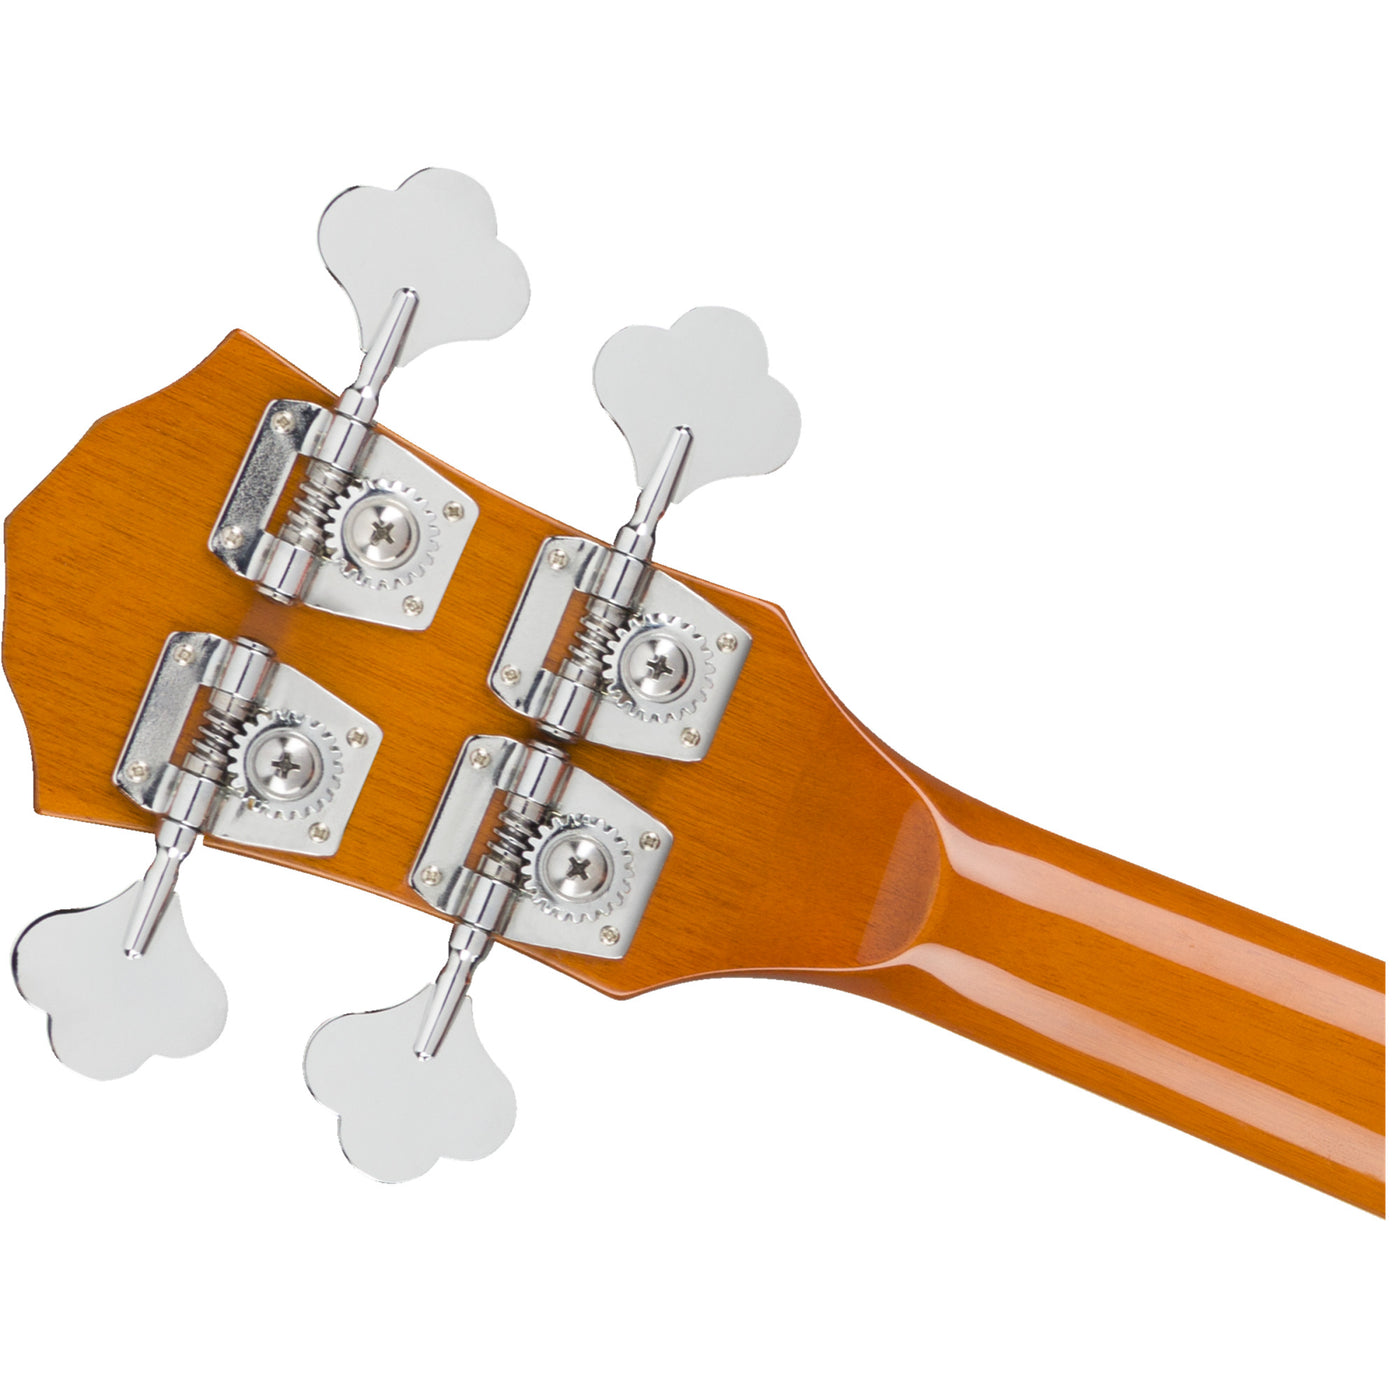 Fender FA-450CE Bass (0971443032)